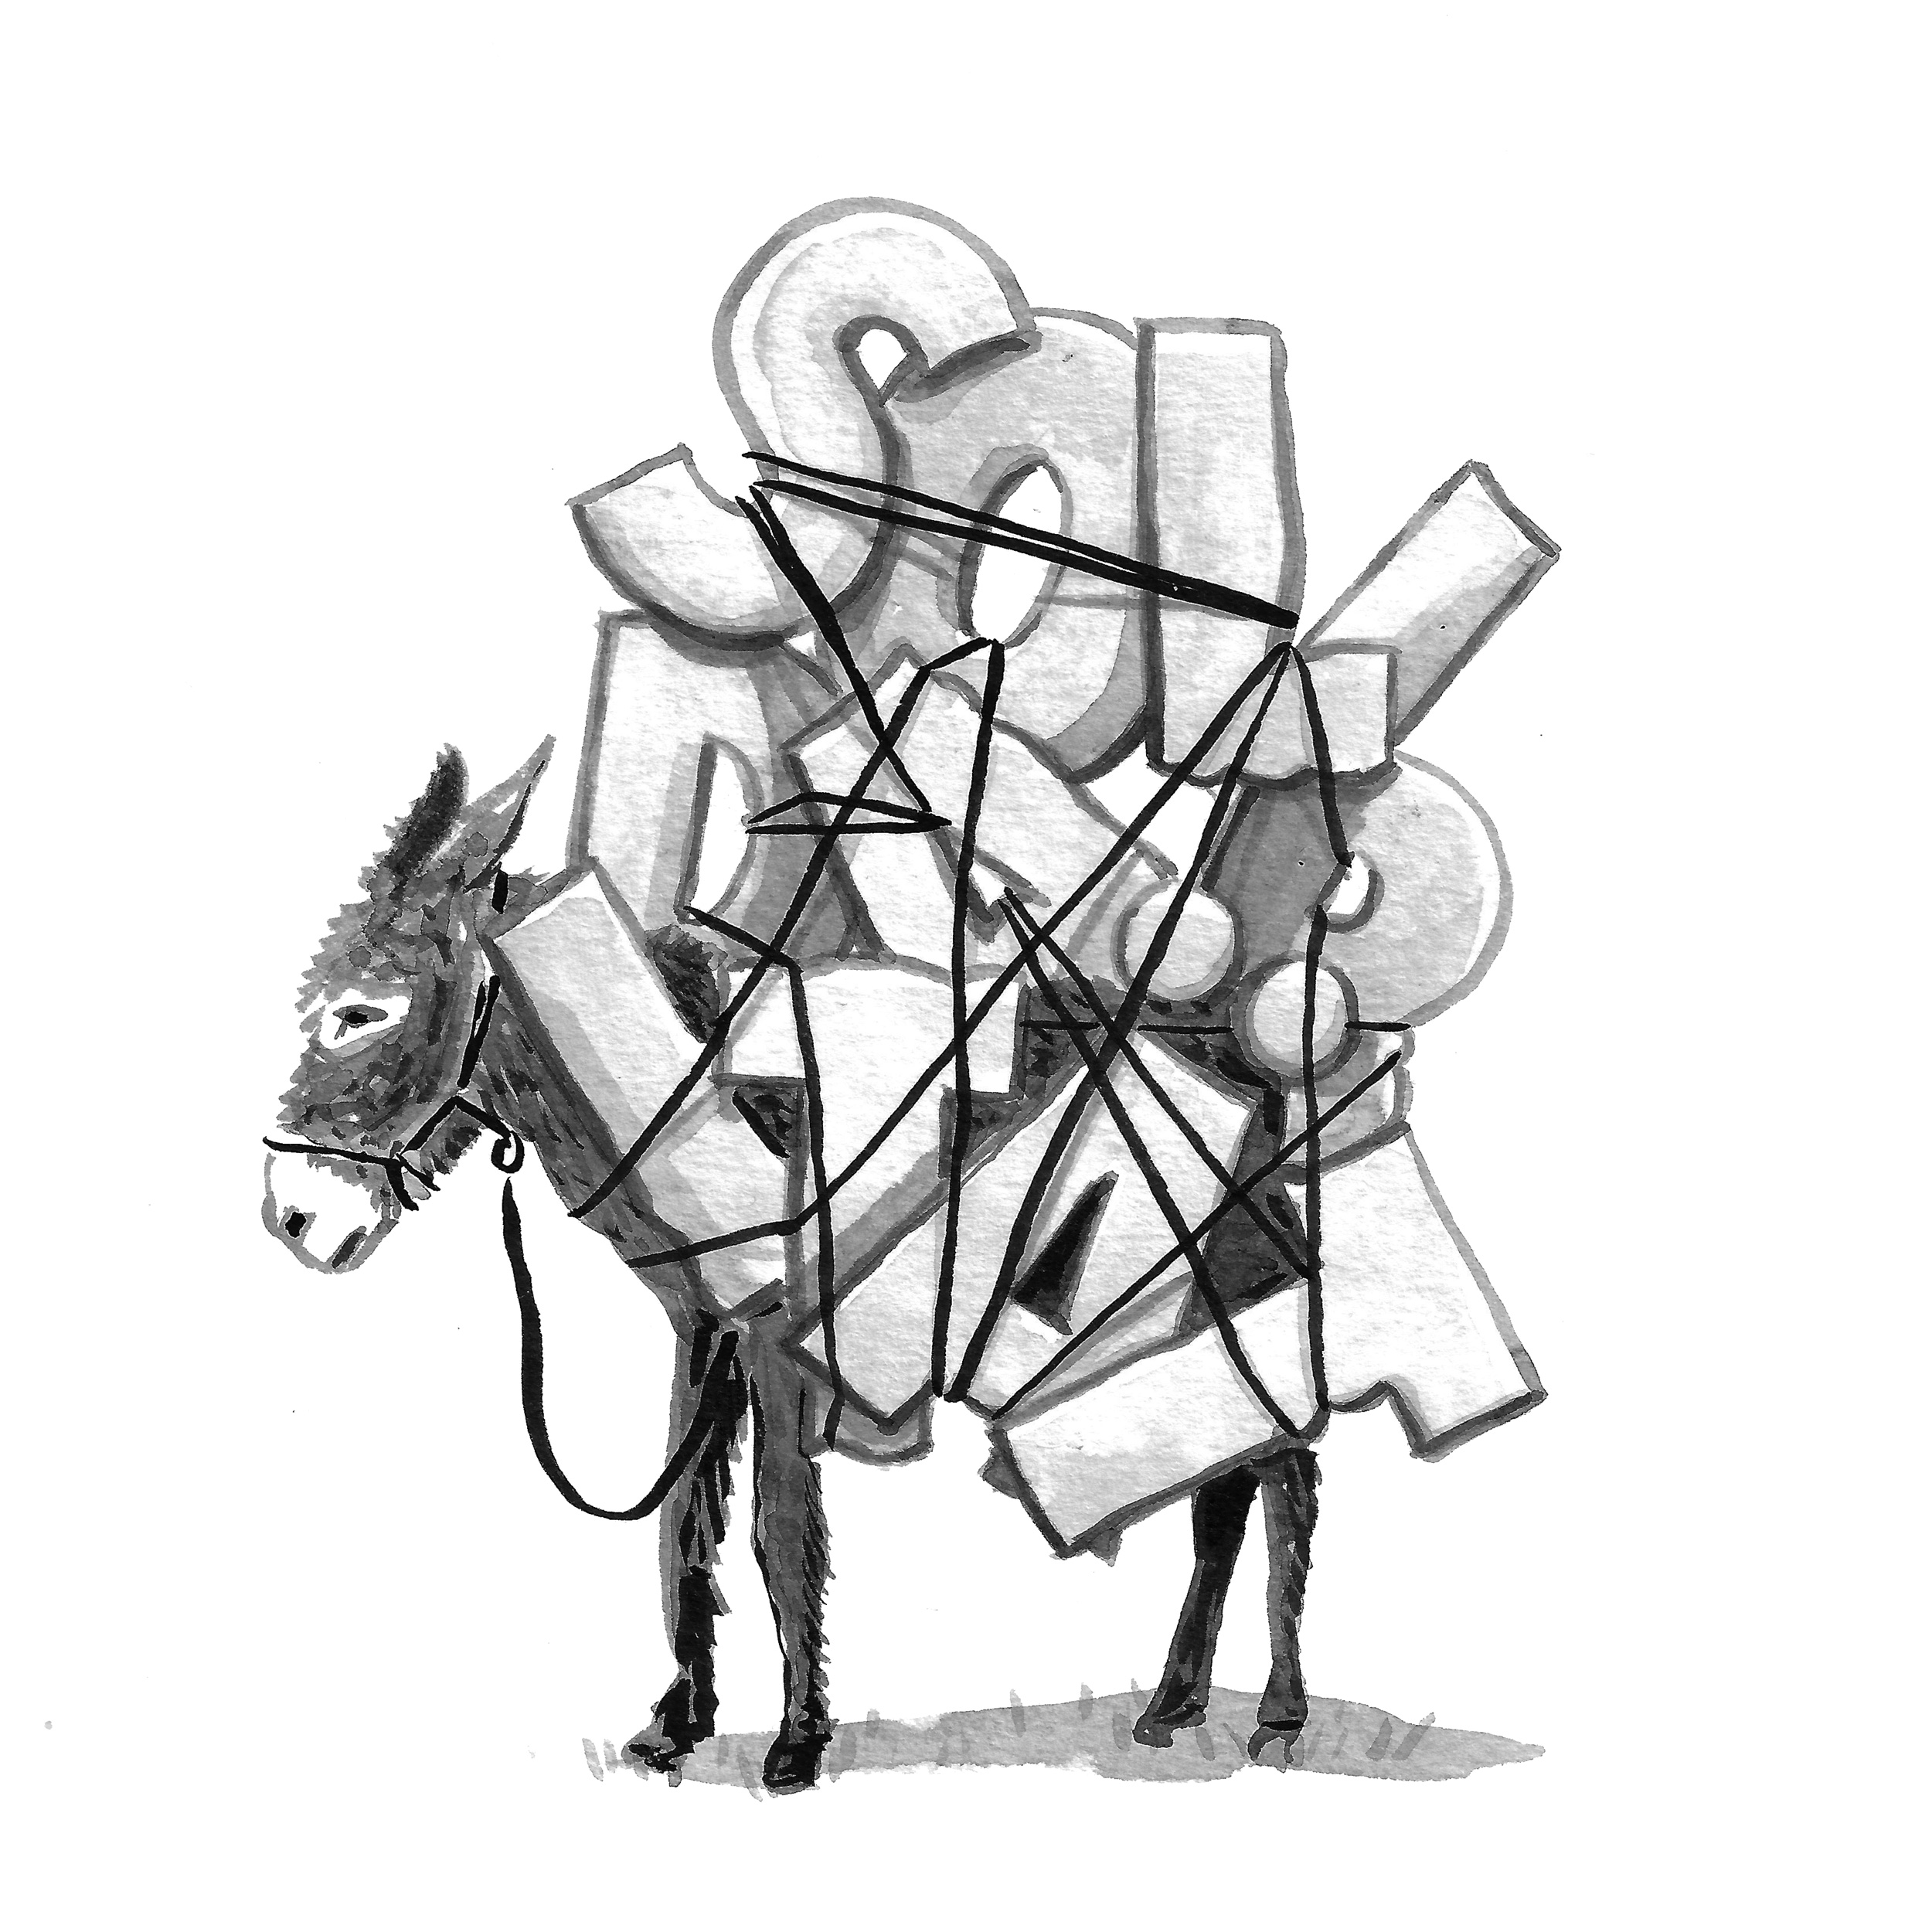 Zu sehen ist eine schwarze Tusche-Zeichnung eines Esels. Das Arbeitstier ist im Profil zu sehen und scheinbar schwer beladen. Eine Last die den Großteil des Bildes einnimmt. Es sind große, mächtige Buchstaben: S, O, L, I, D, A, R, I, T, Ä, T.